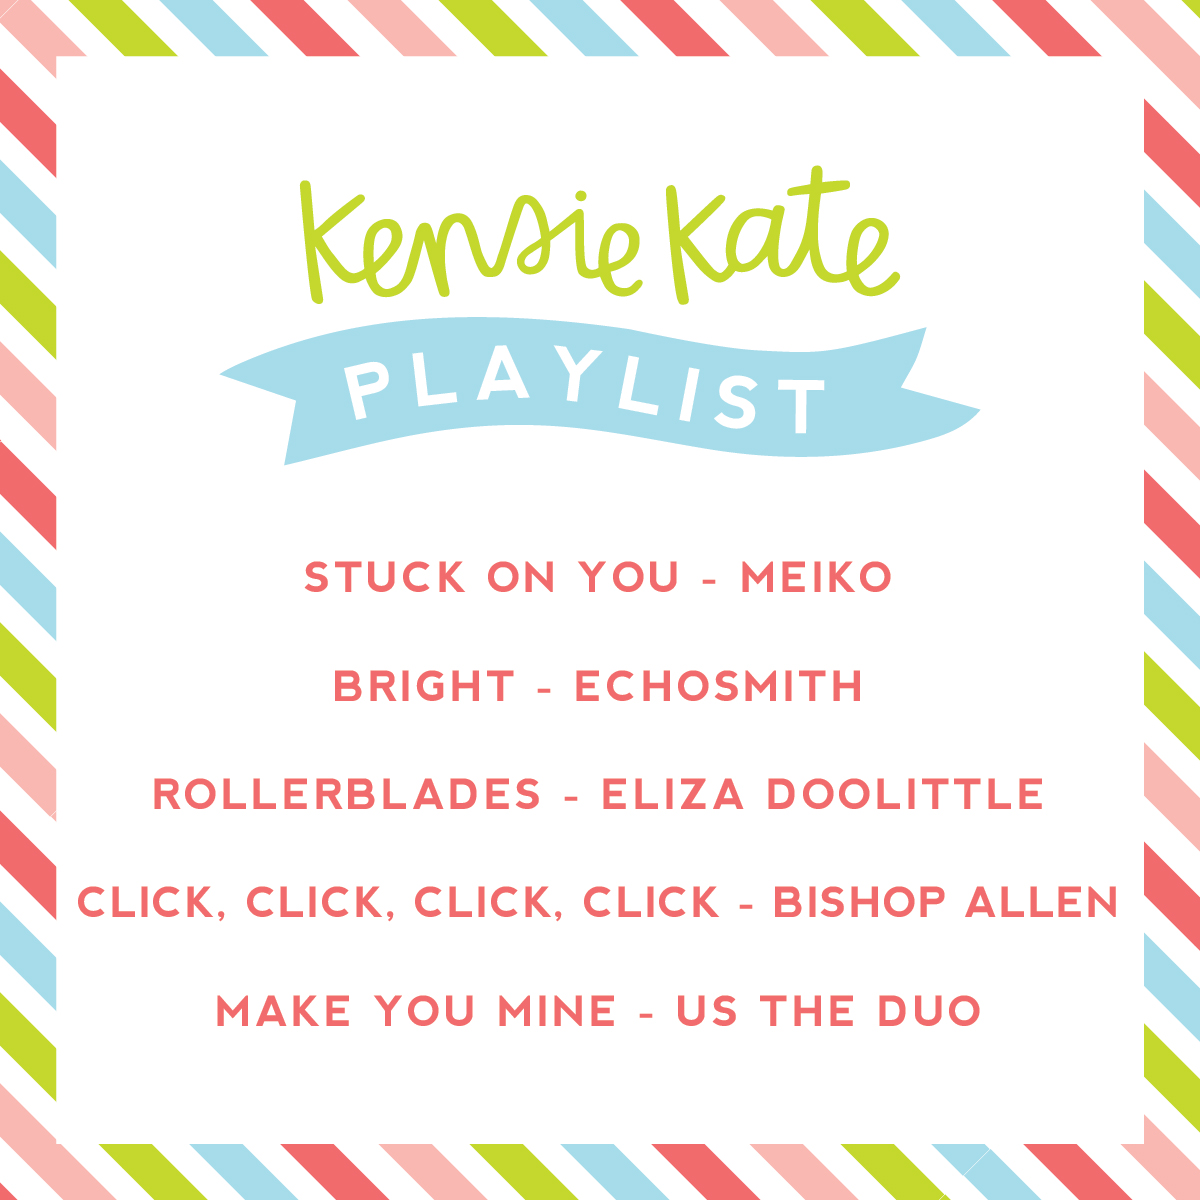 kensie kate playlist | click to listen